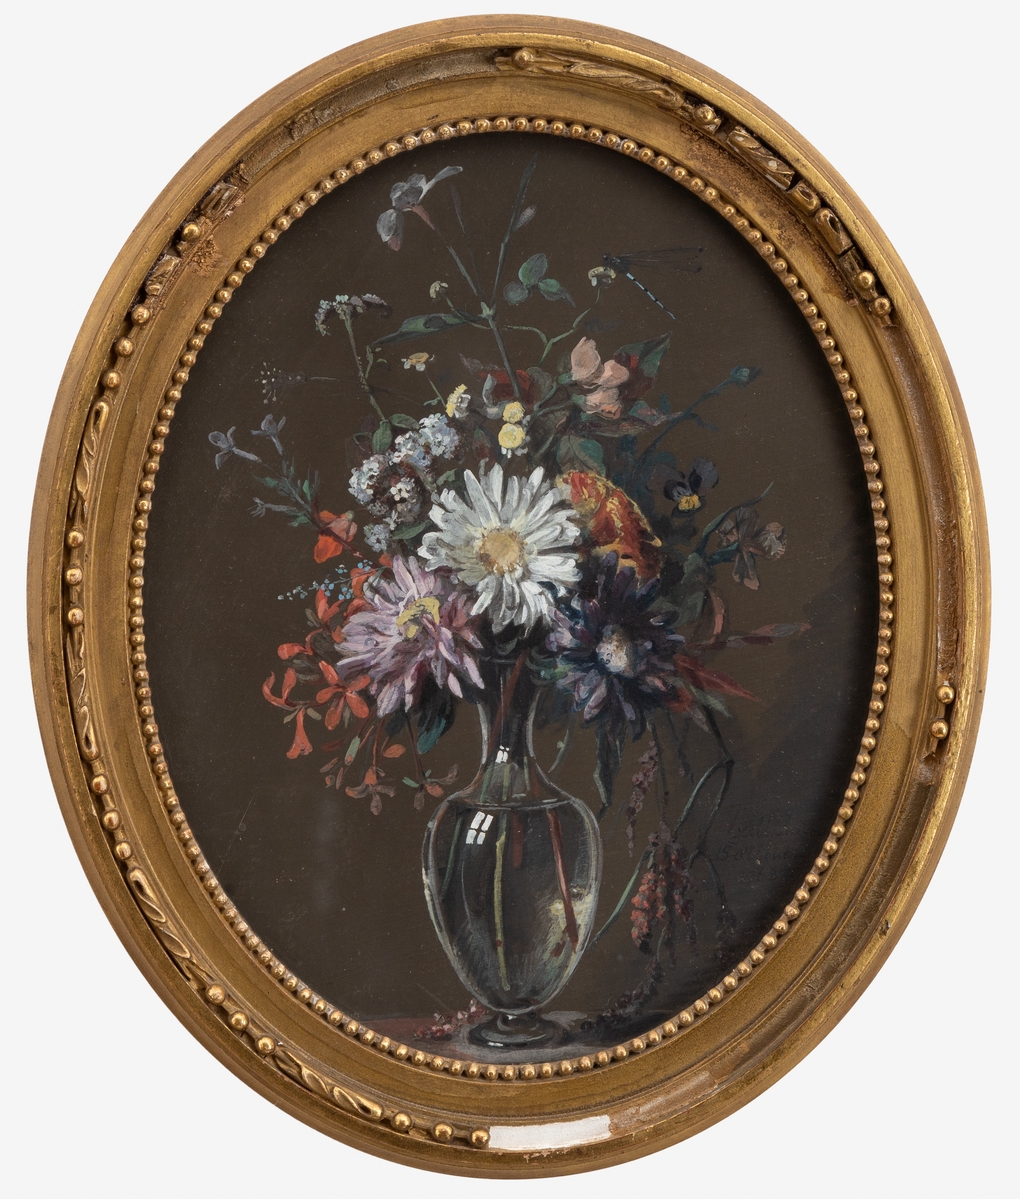 Blombukett i en äggformad vas. En trollslända syns bland blommorna. Bakgrunden gråbrun.
Begynnelsebokstäverna på blommornas franska namn bildar namnen på Madame Halls systerdöttrar.